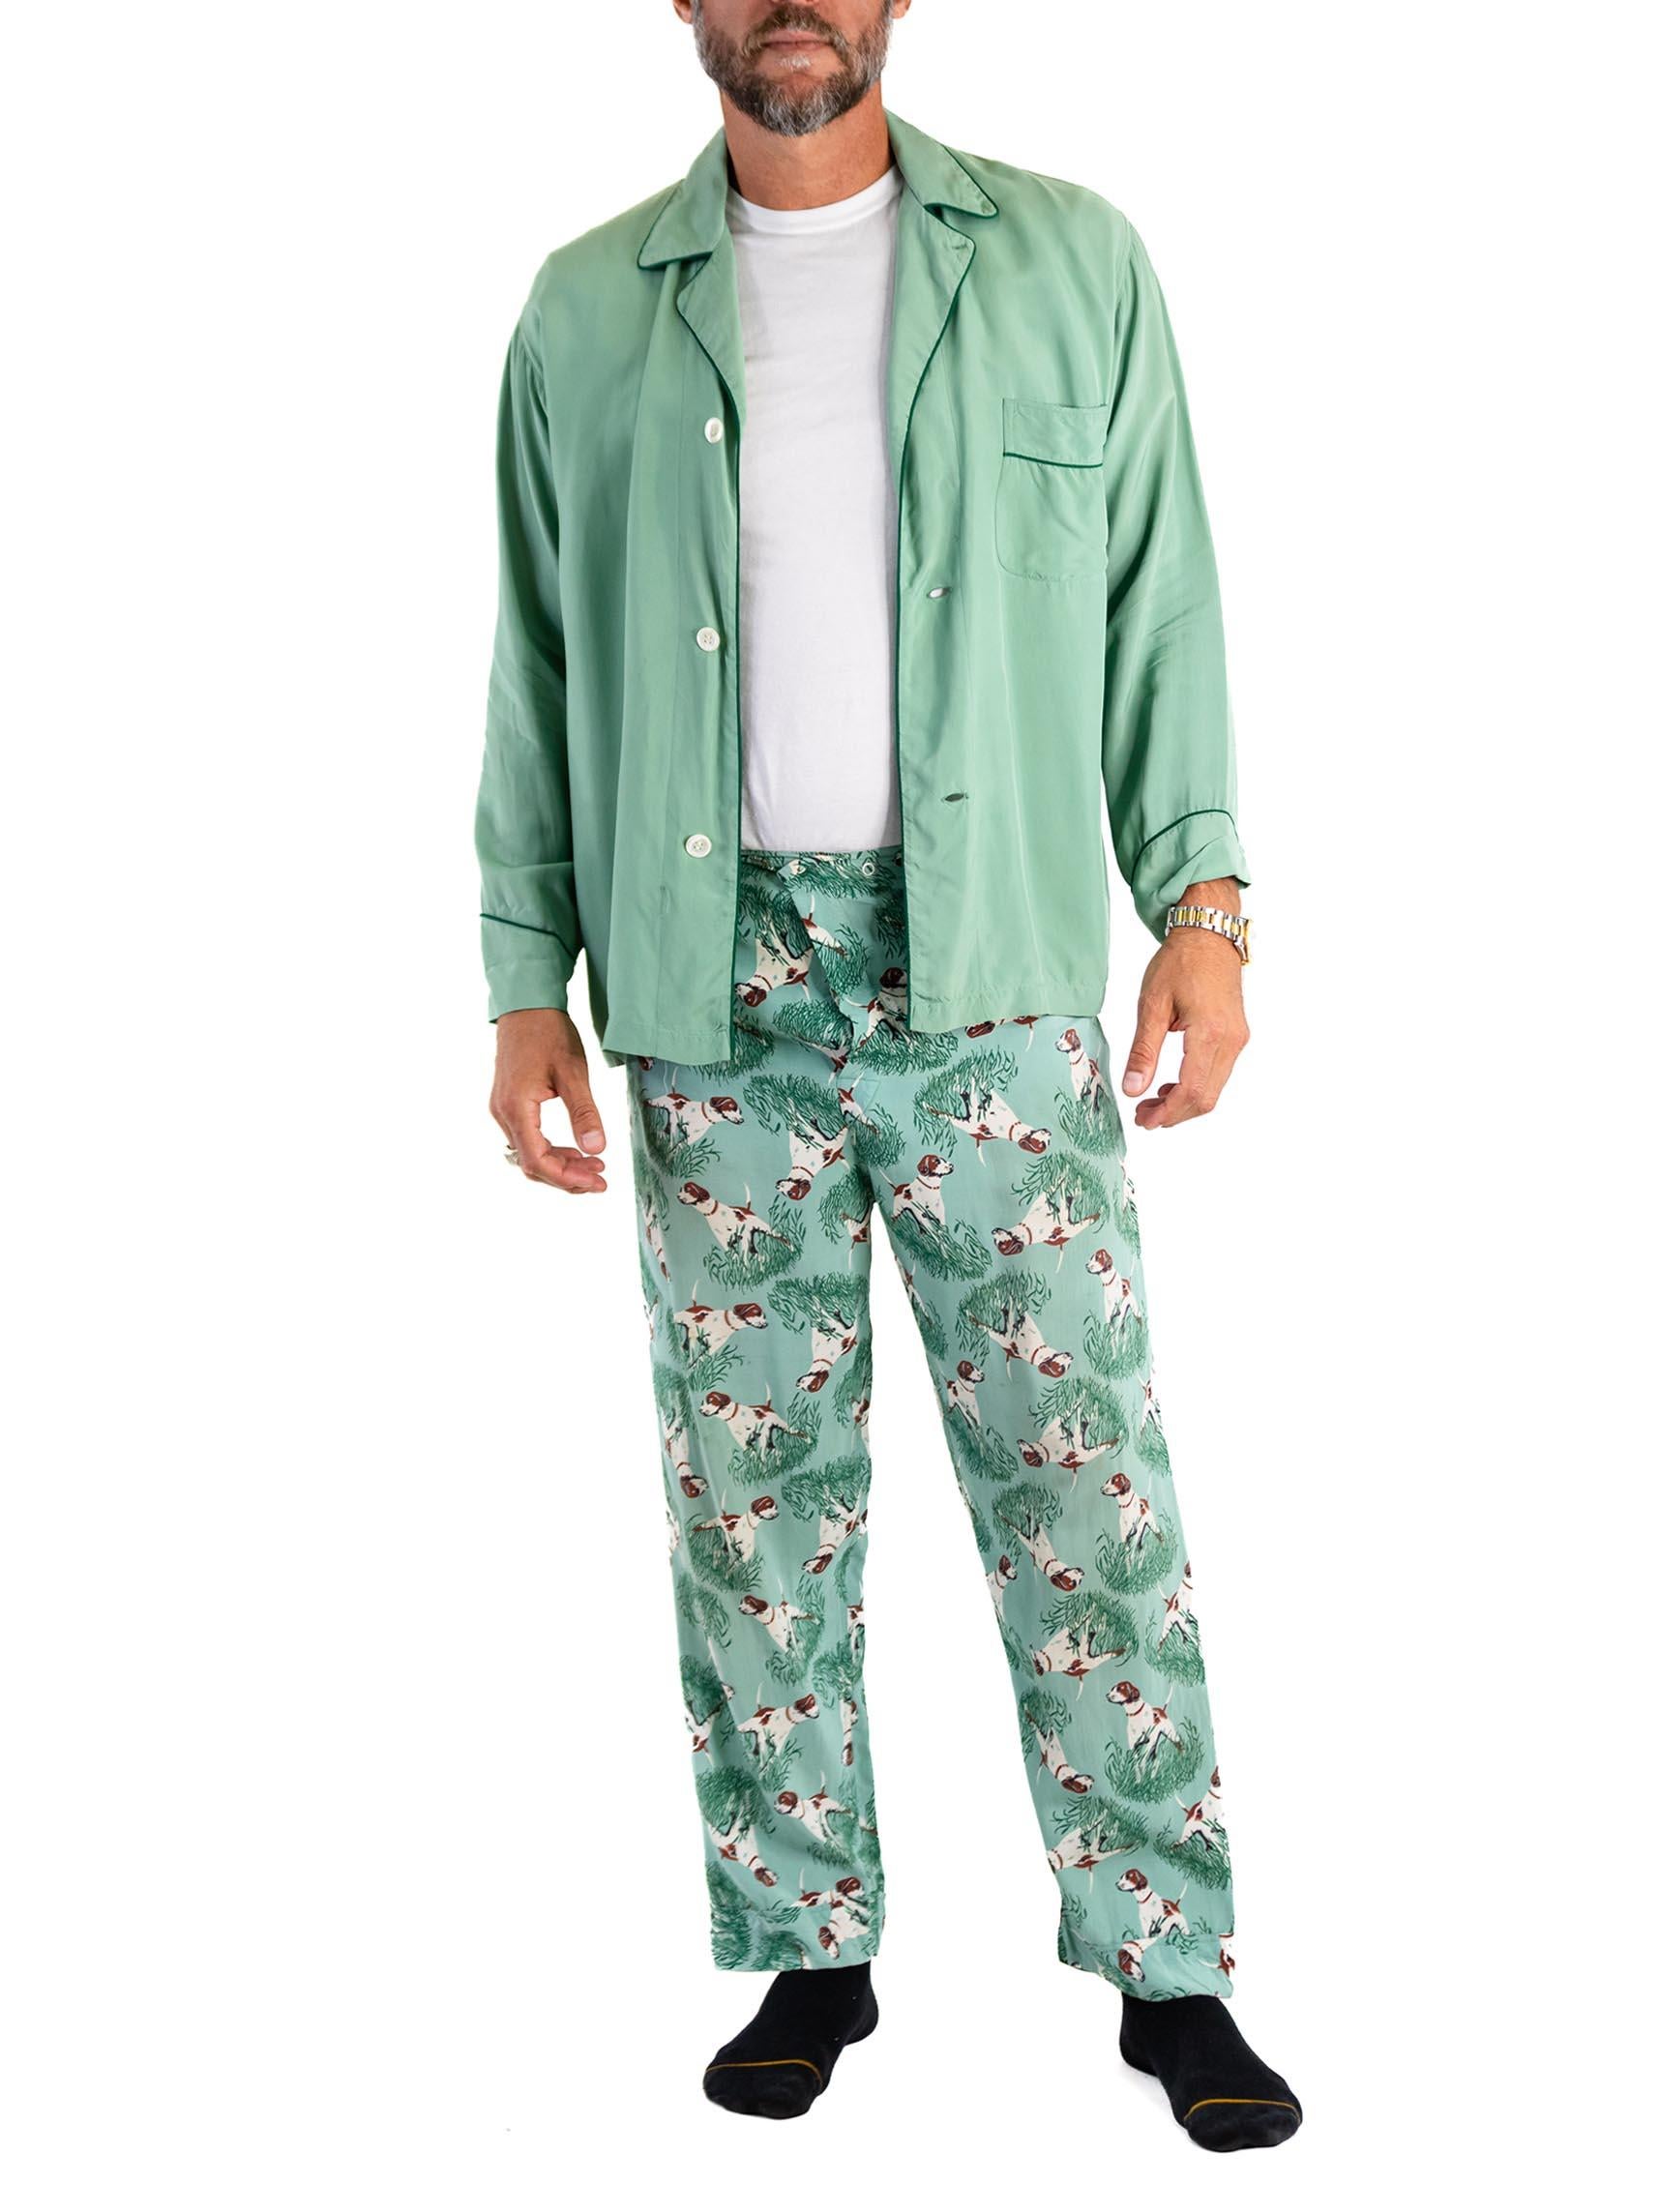 1940S Teal Rayon Solid Top And Hunting Dog Pants Pajamas Set For Sale 2